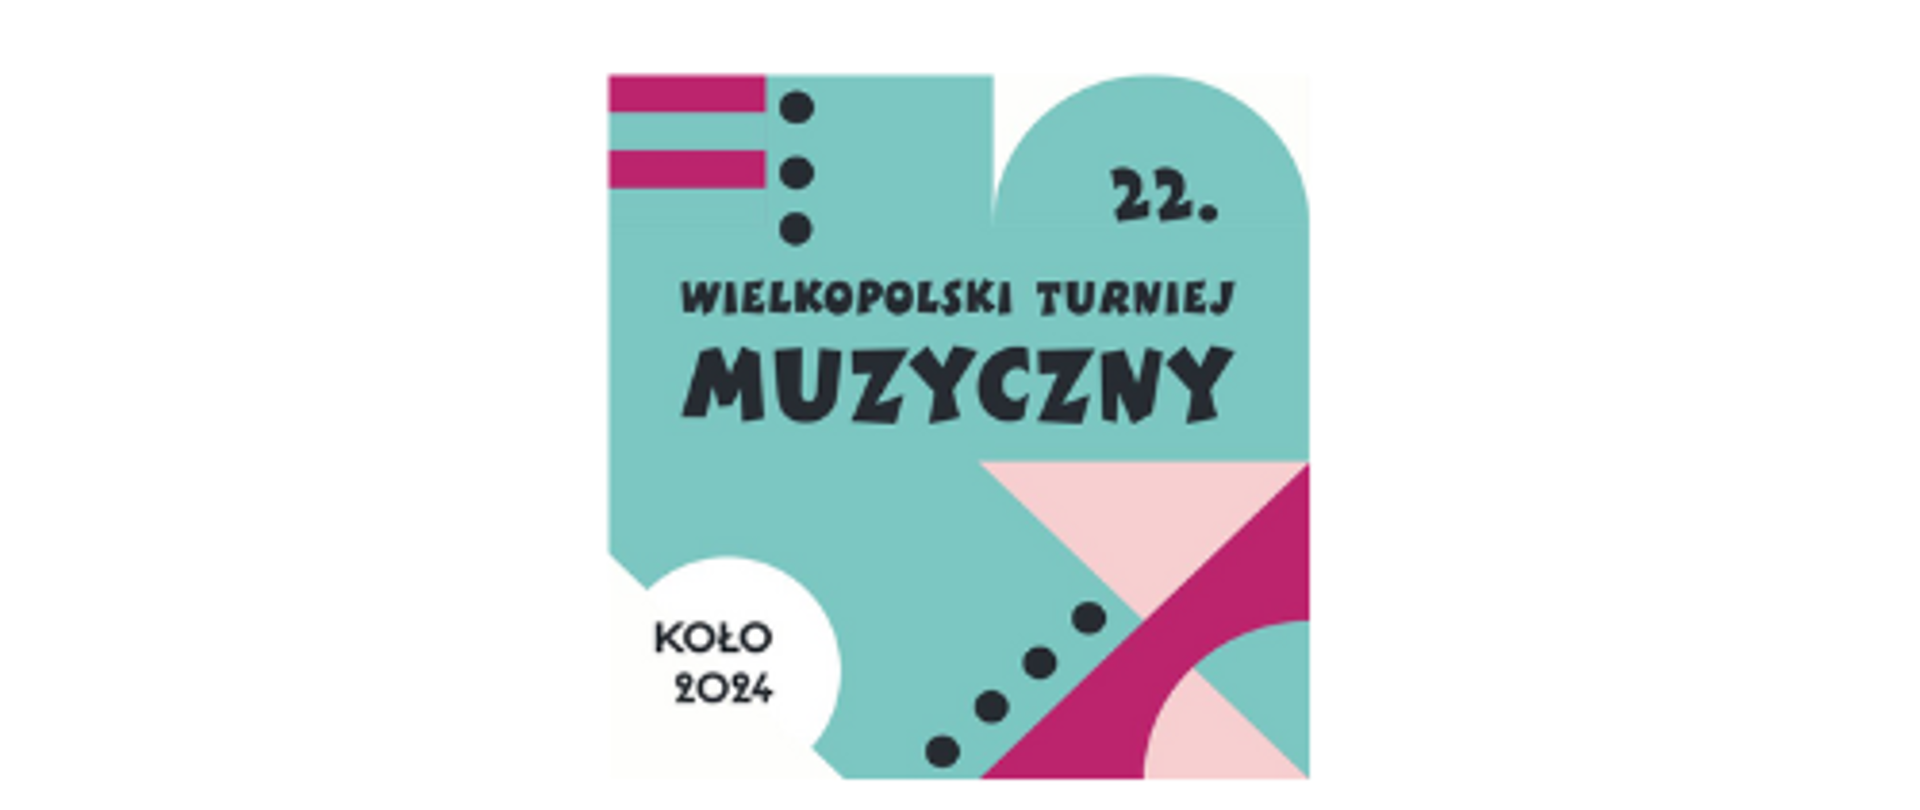 kolorowa grafika i napis 22 wielkopolski turniej muzyczny Koło 2024